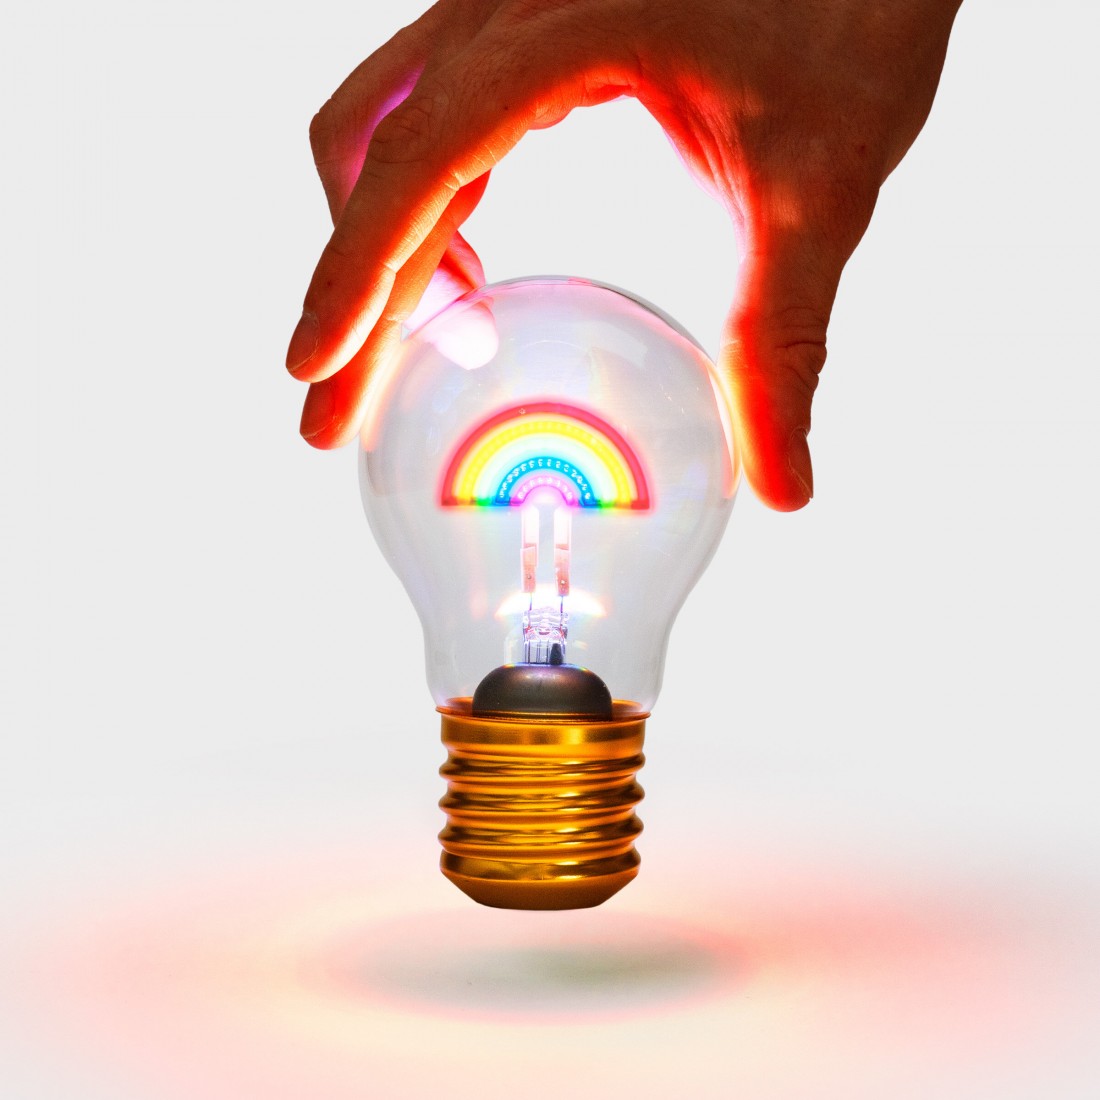 https://lideetoulouse.fr/2865-thickbox_default/lampe-ampoule-led-sans-fil-rainbow-batterie-usb-suck-uk.jpg